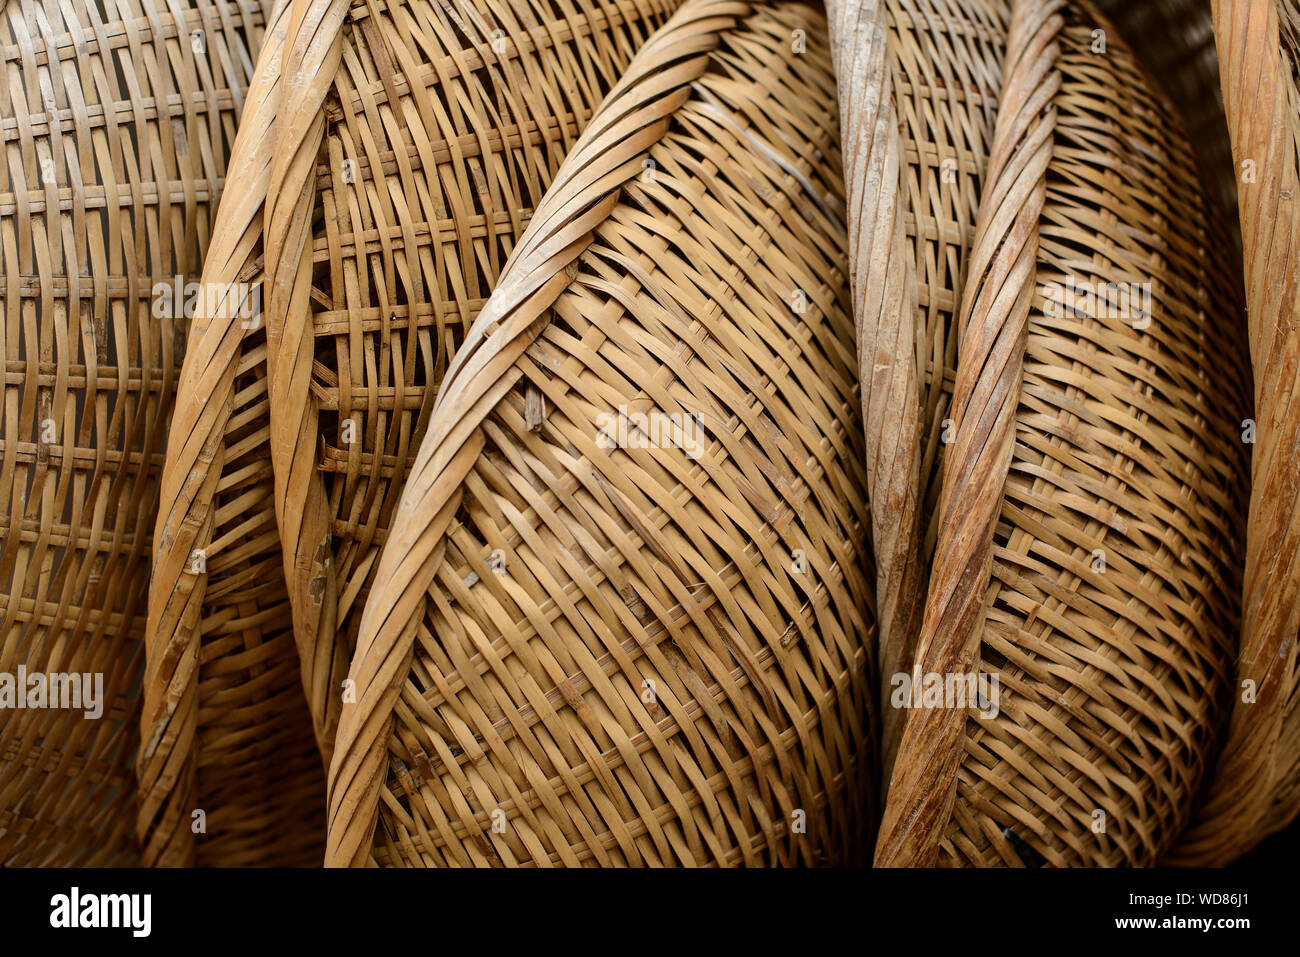 Full Frame Shot Of Rattan Baskets Stock Photo